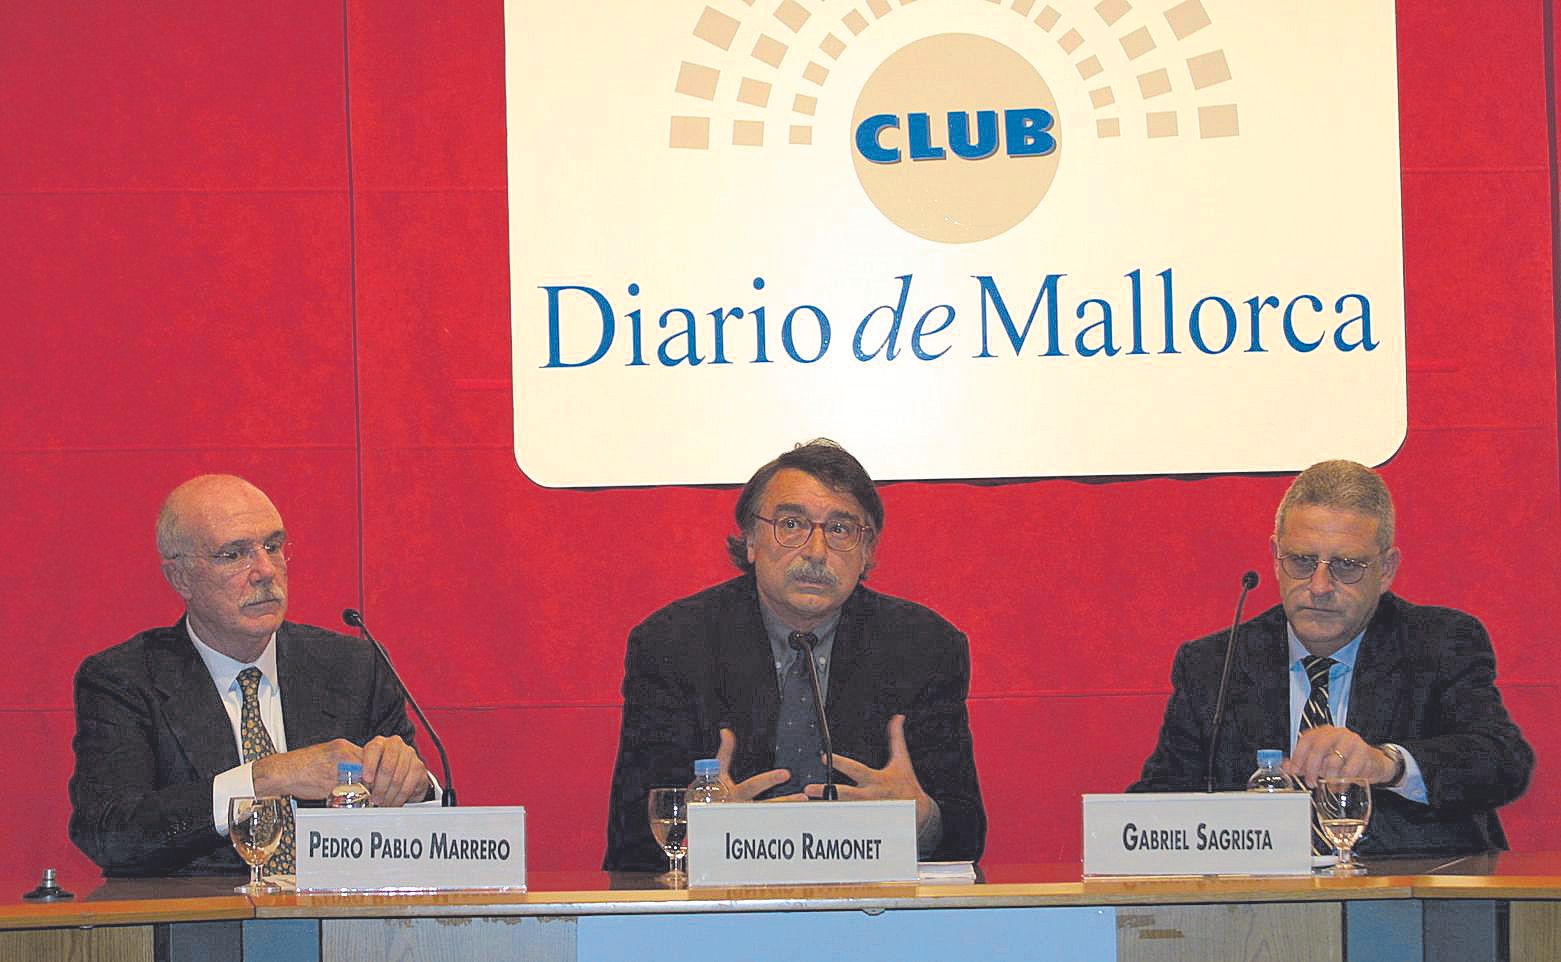 FOTOS | Repaso a 30 años de historia del Club Diario de Mallorca